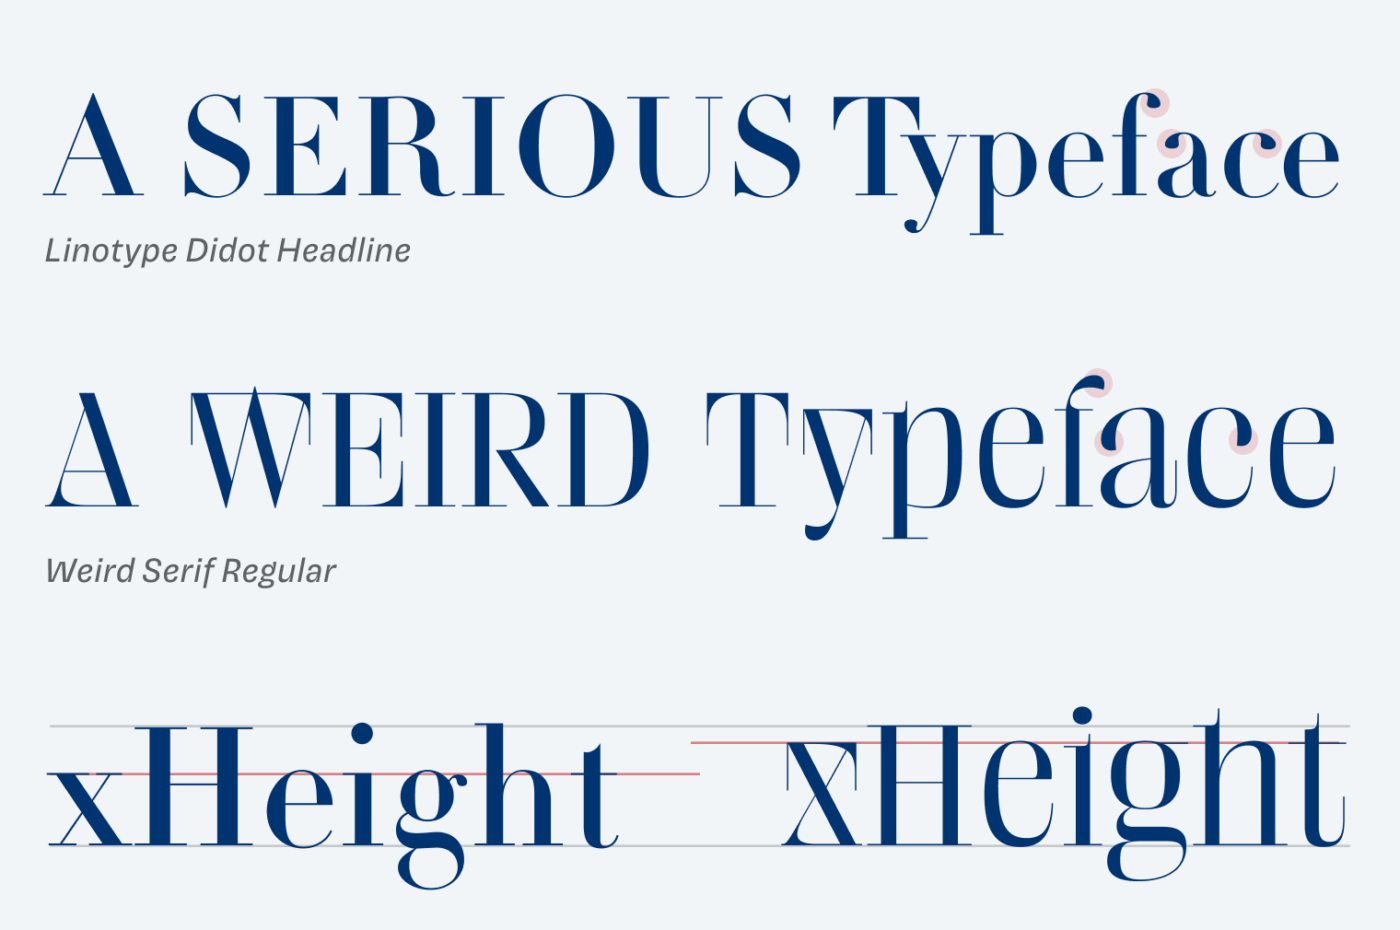 Linotype Didot Headline: A Serious Typeface
Weird Serif Regular: A Weird typeface
